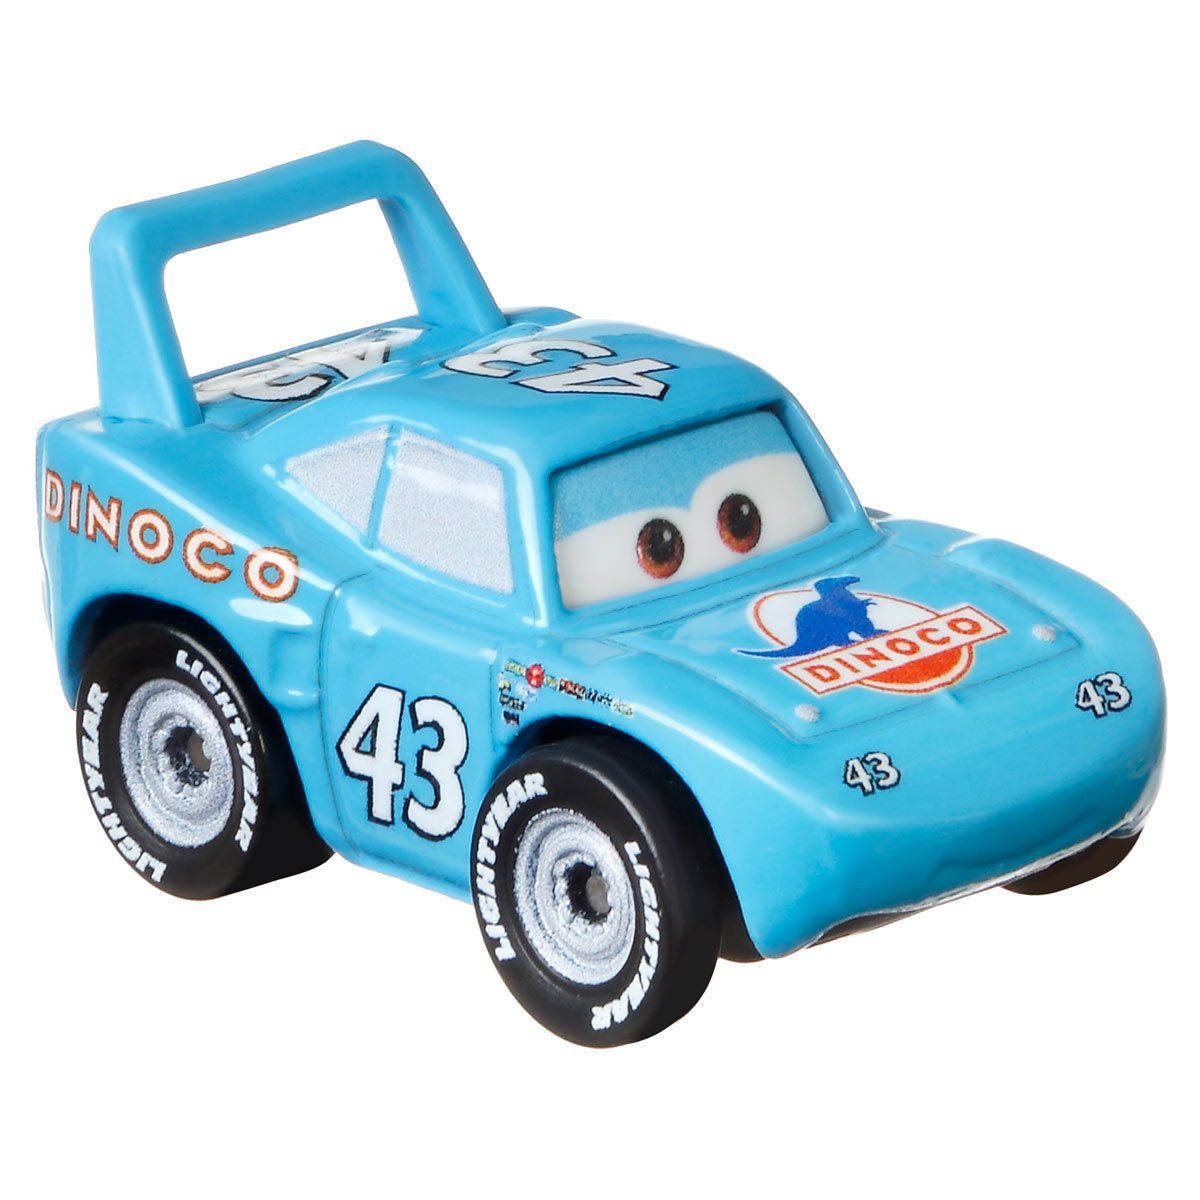 Mini Racers, Pixar Cars Die-casts Wiki